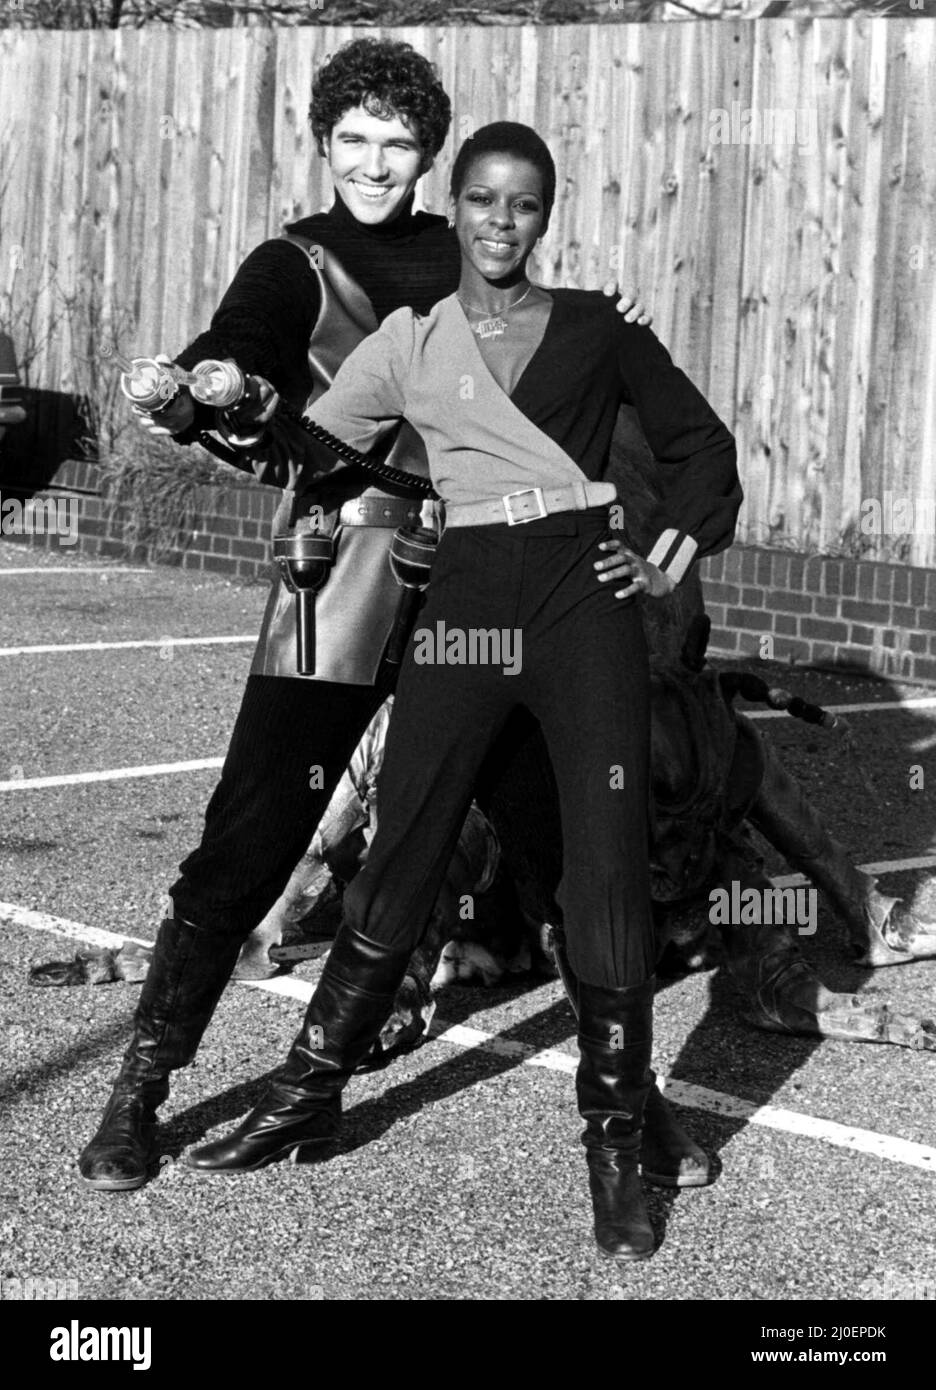 Programma televisivo - i sette nuovi membri del cast di Blake Josette Simon e Steven Pacey posano con un mutante, rock-eating, formica gigante 2 gennaio 1980 Foto Stock